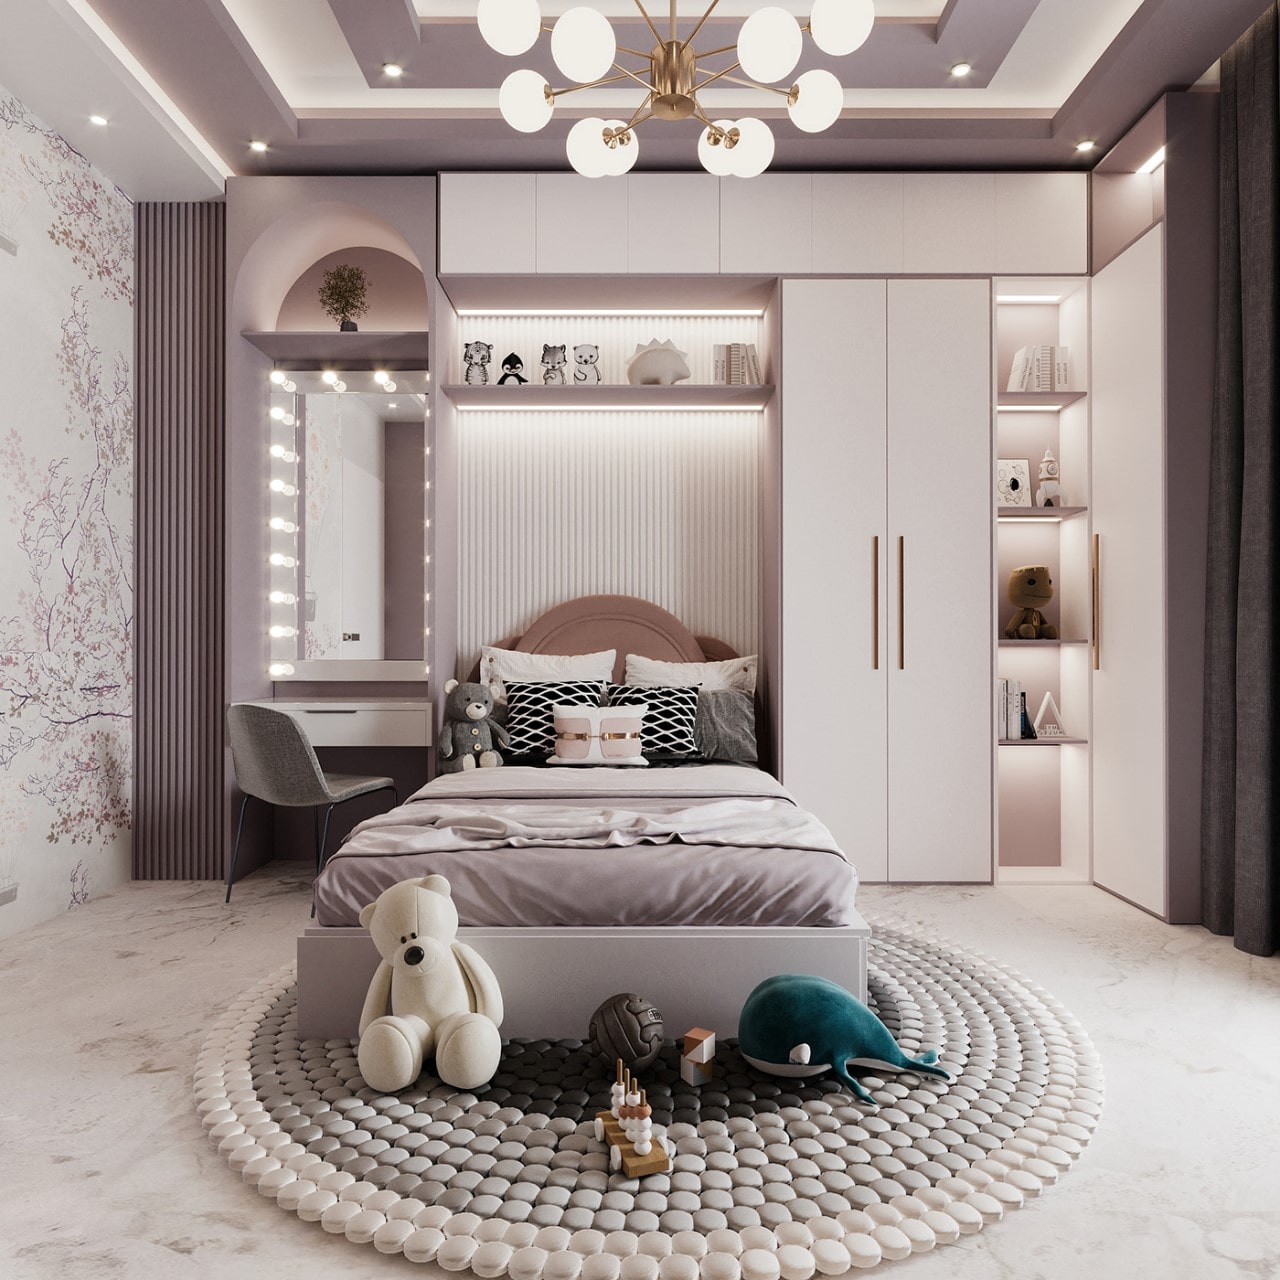 Trang trí phòng ngủ màu tím trắng là một lựa chọn tinh tế và thanh lịch